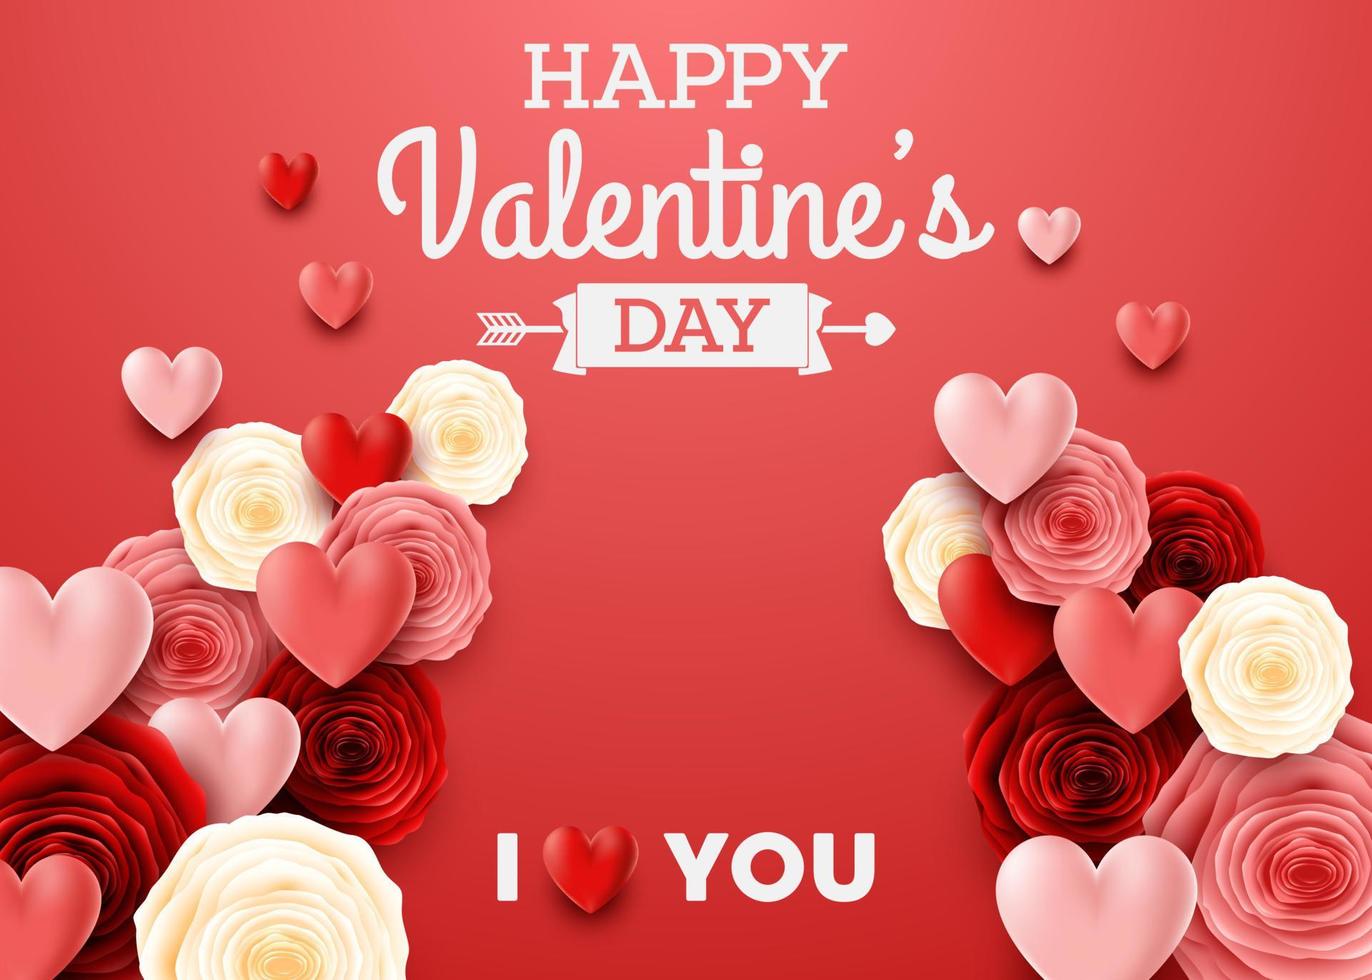 tarjeta de felicitación del día de san valentín con flor de rosa y fondo de corazones vector